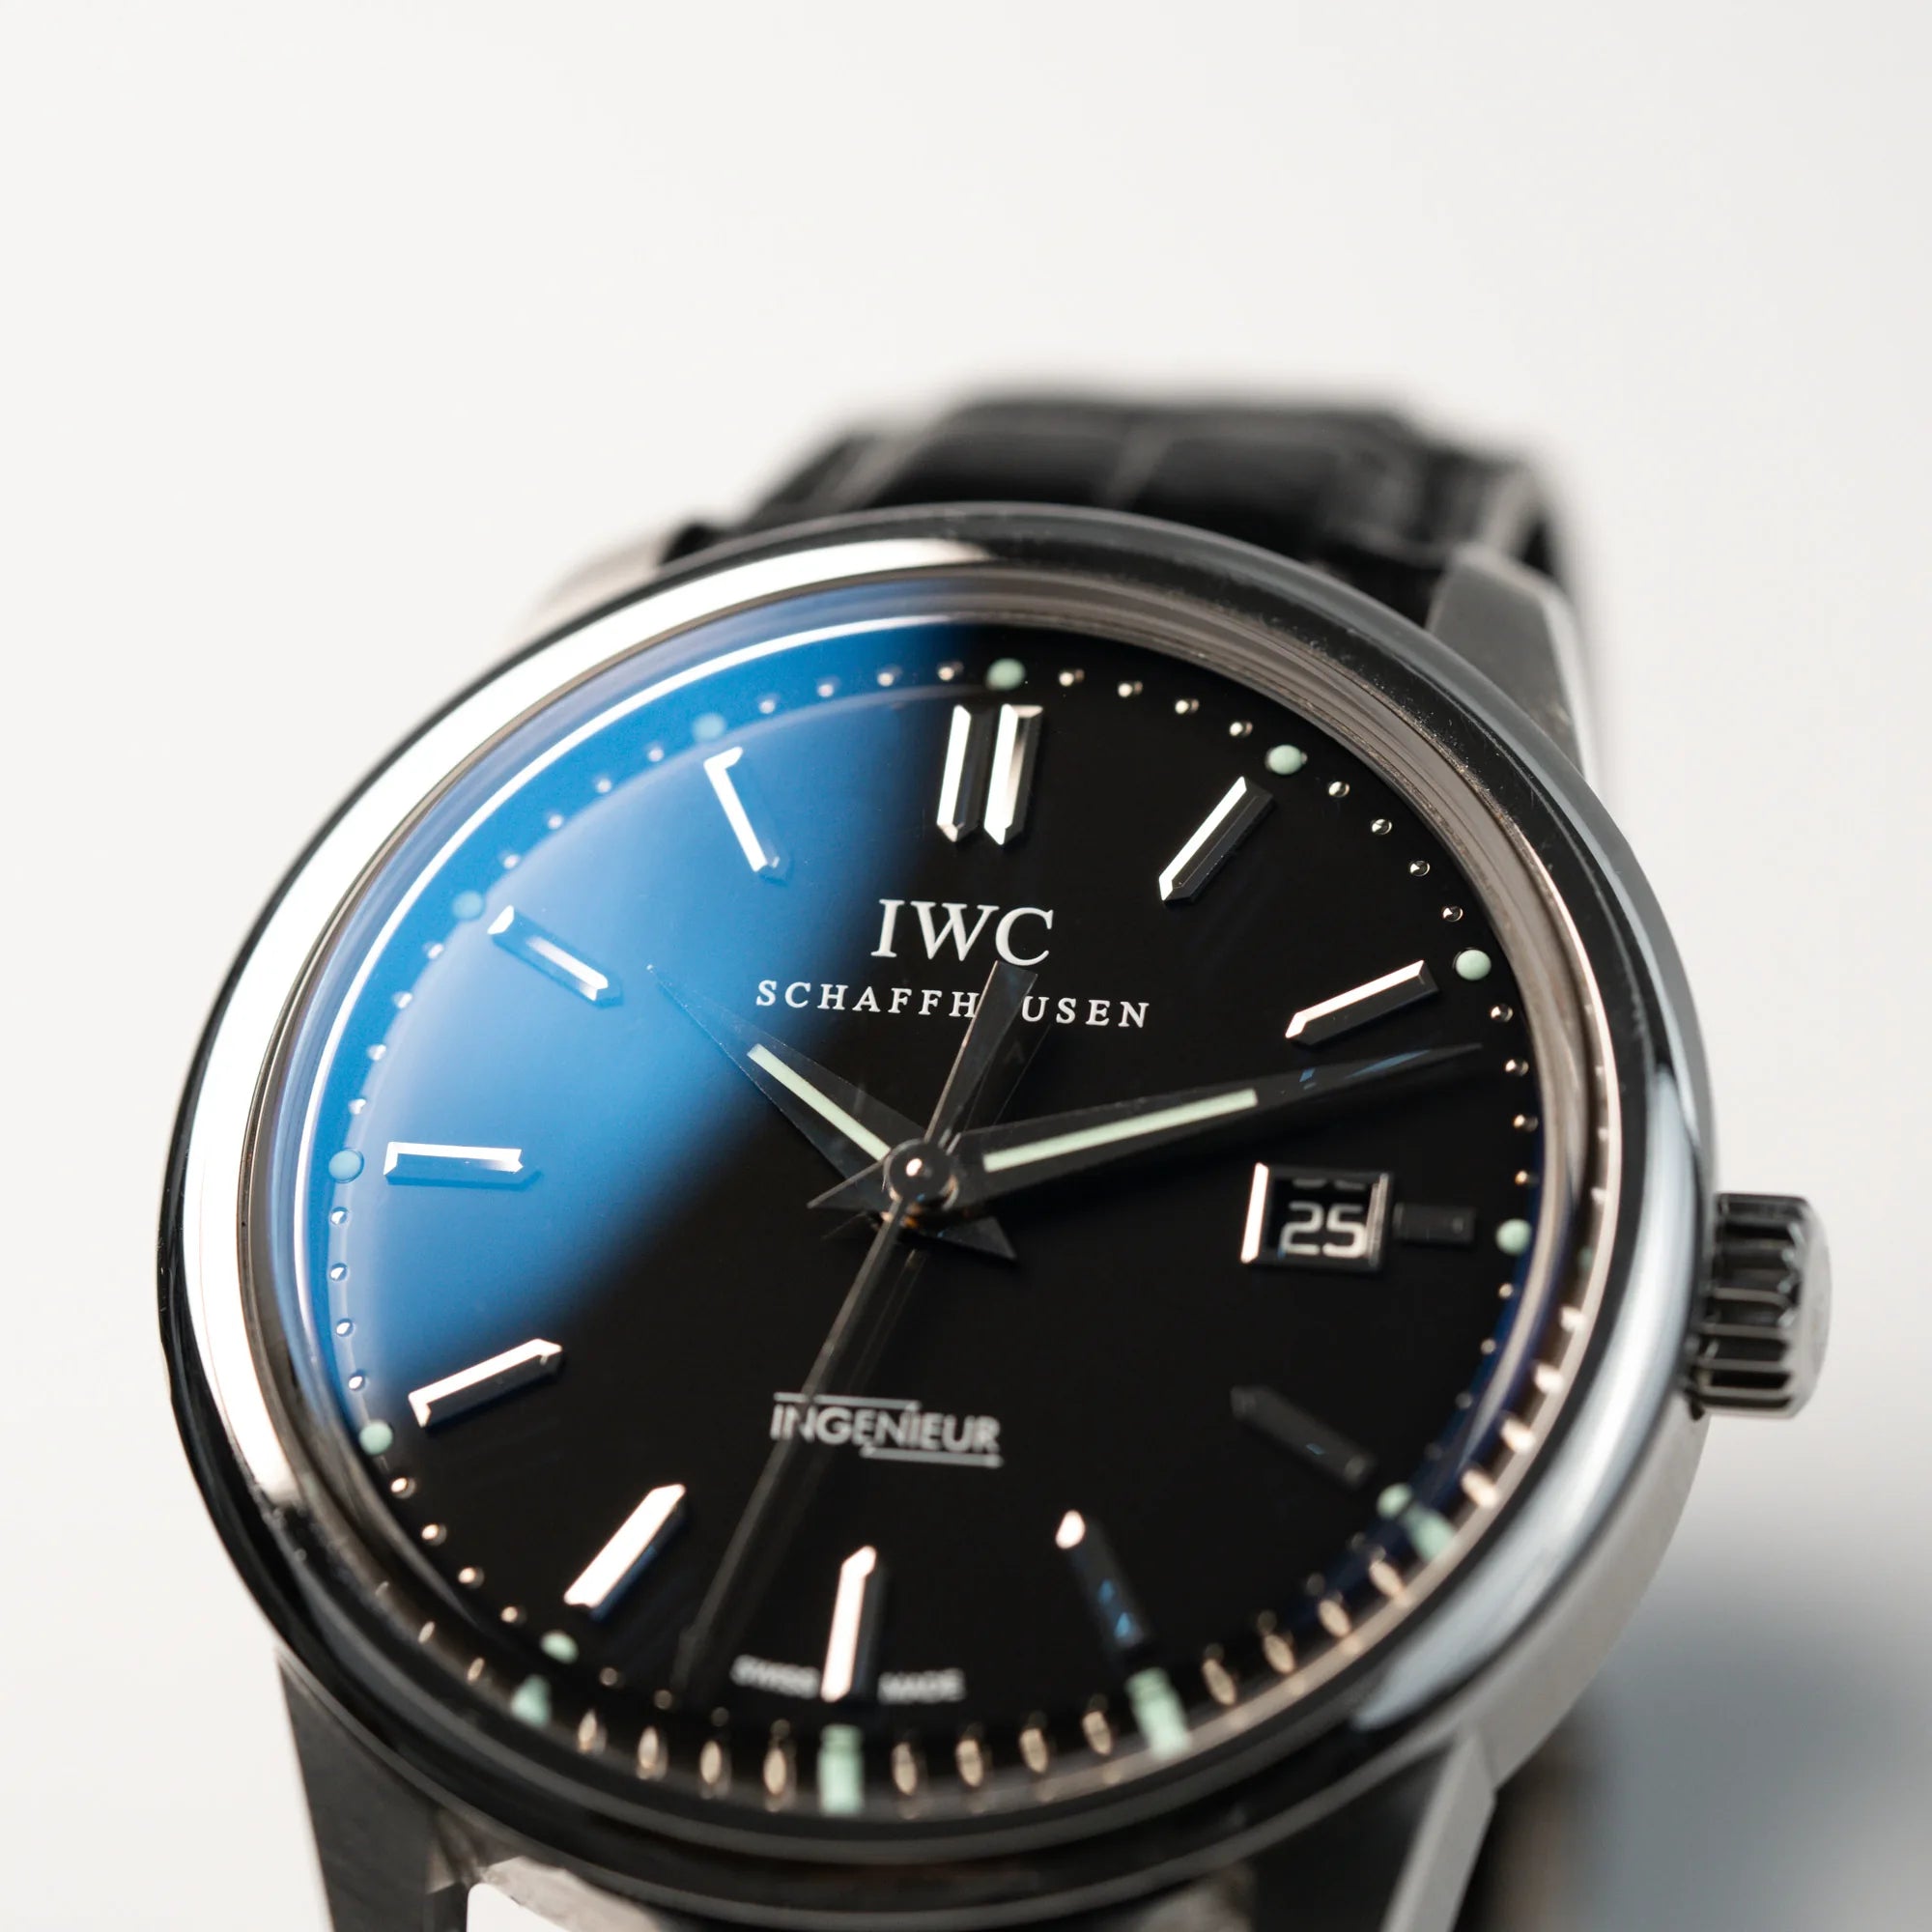 Makroaufnahme der IWC Schaffhausen Uhr "Ingenieur" mit der Referenz IW323301 mit schwarzem Zifferblatt